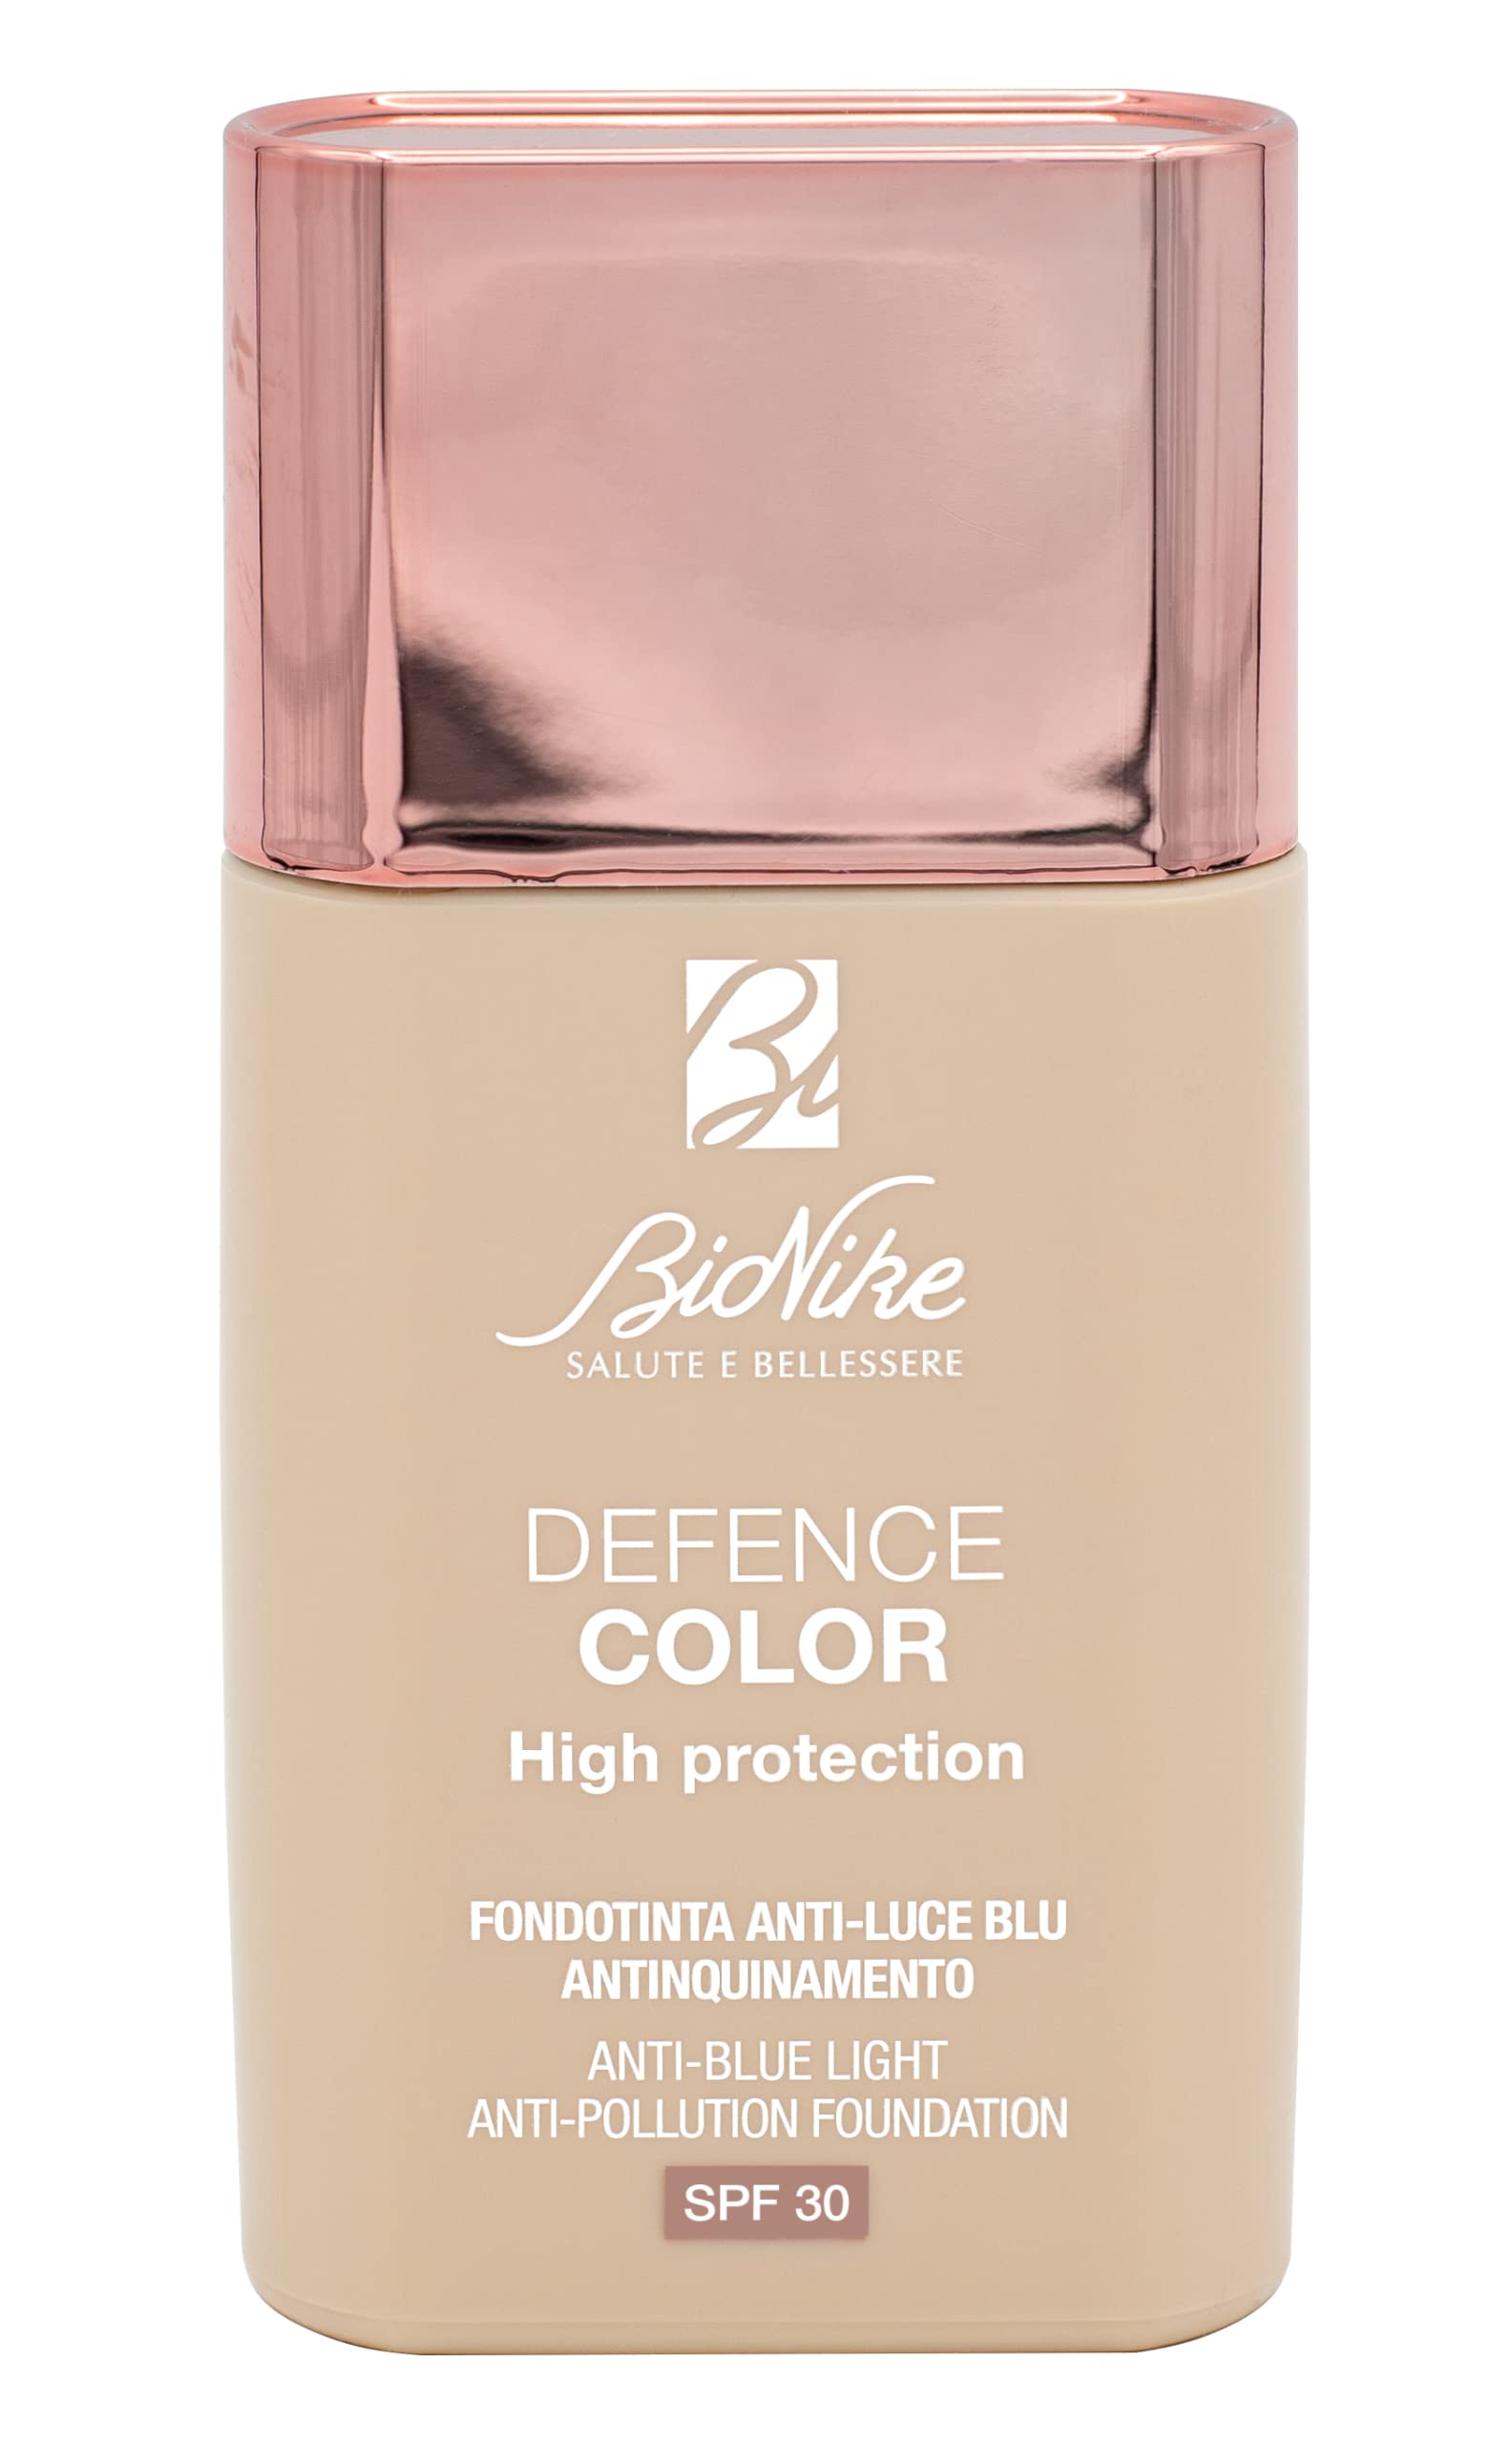 BioNike Defence Color - Fondotinta Protezione Inquinamento Luce Blu N. 306, 30ml